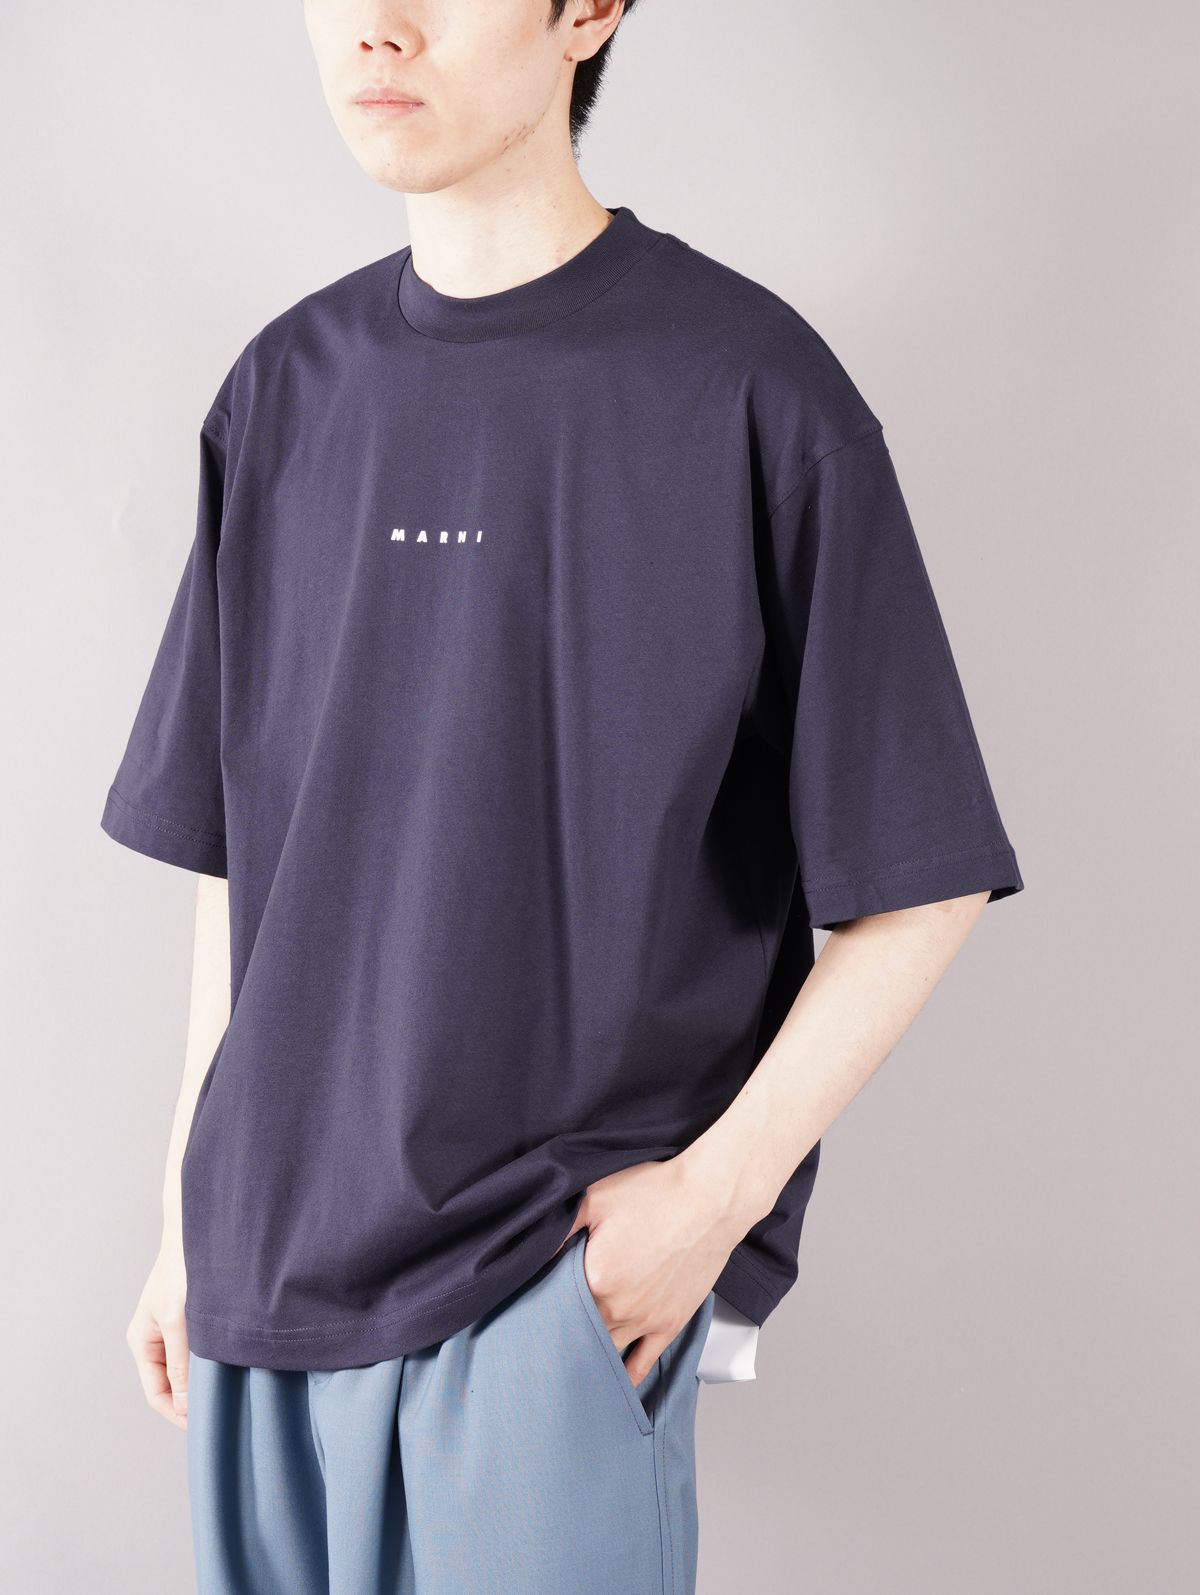 【ラスト1点】 LOGO T-SHIRT / ロゴ Tシャツ / オーバーサイズ / ネイビー / 22SS / メンズ - 46